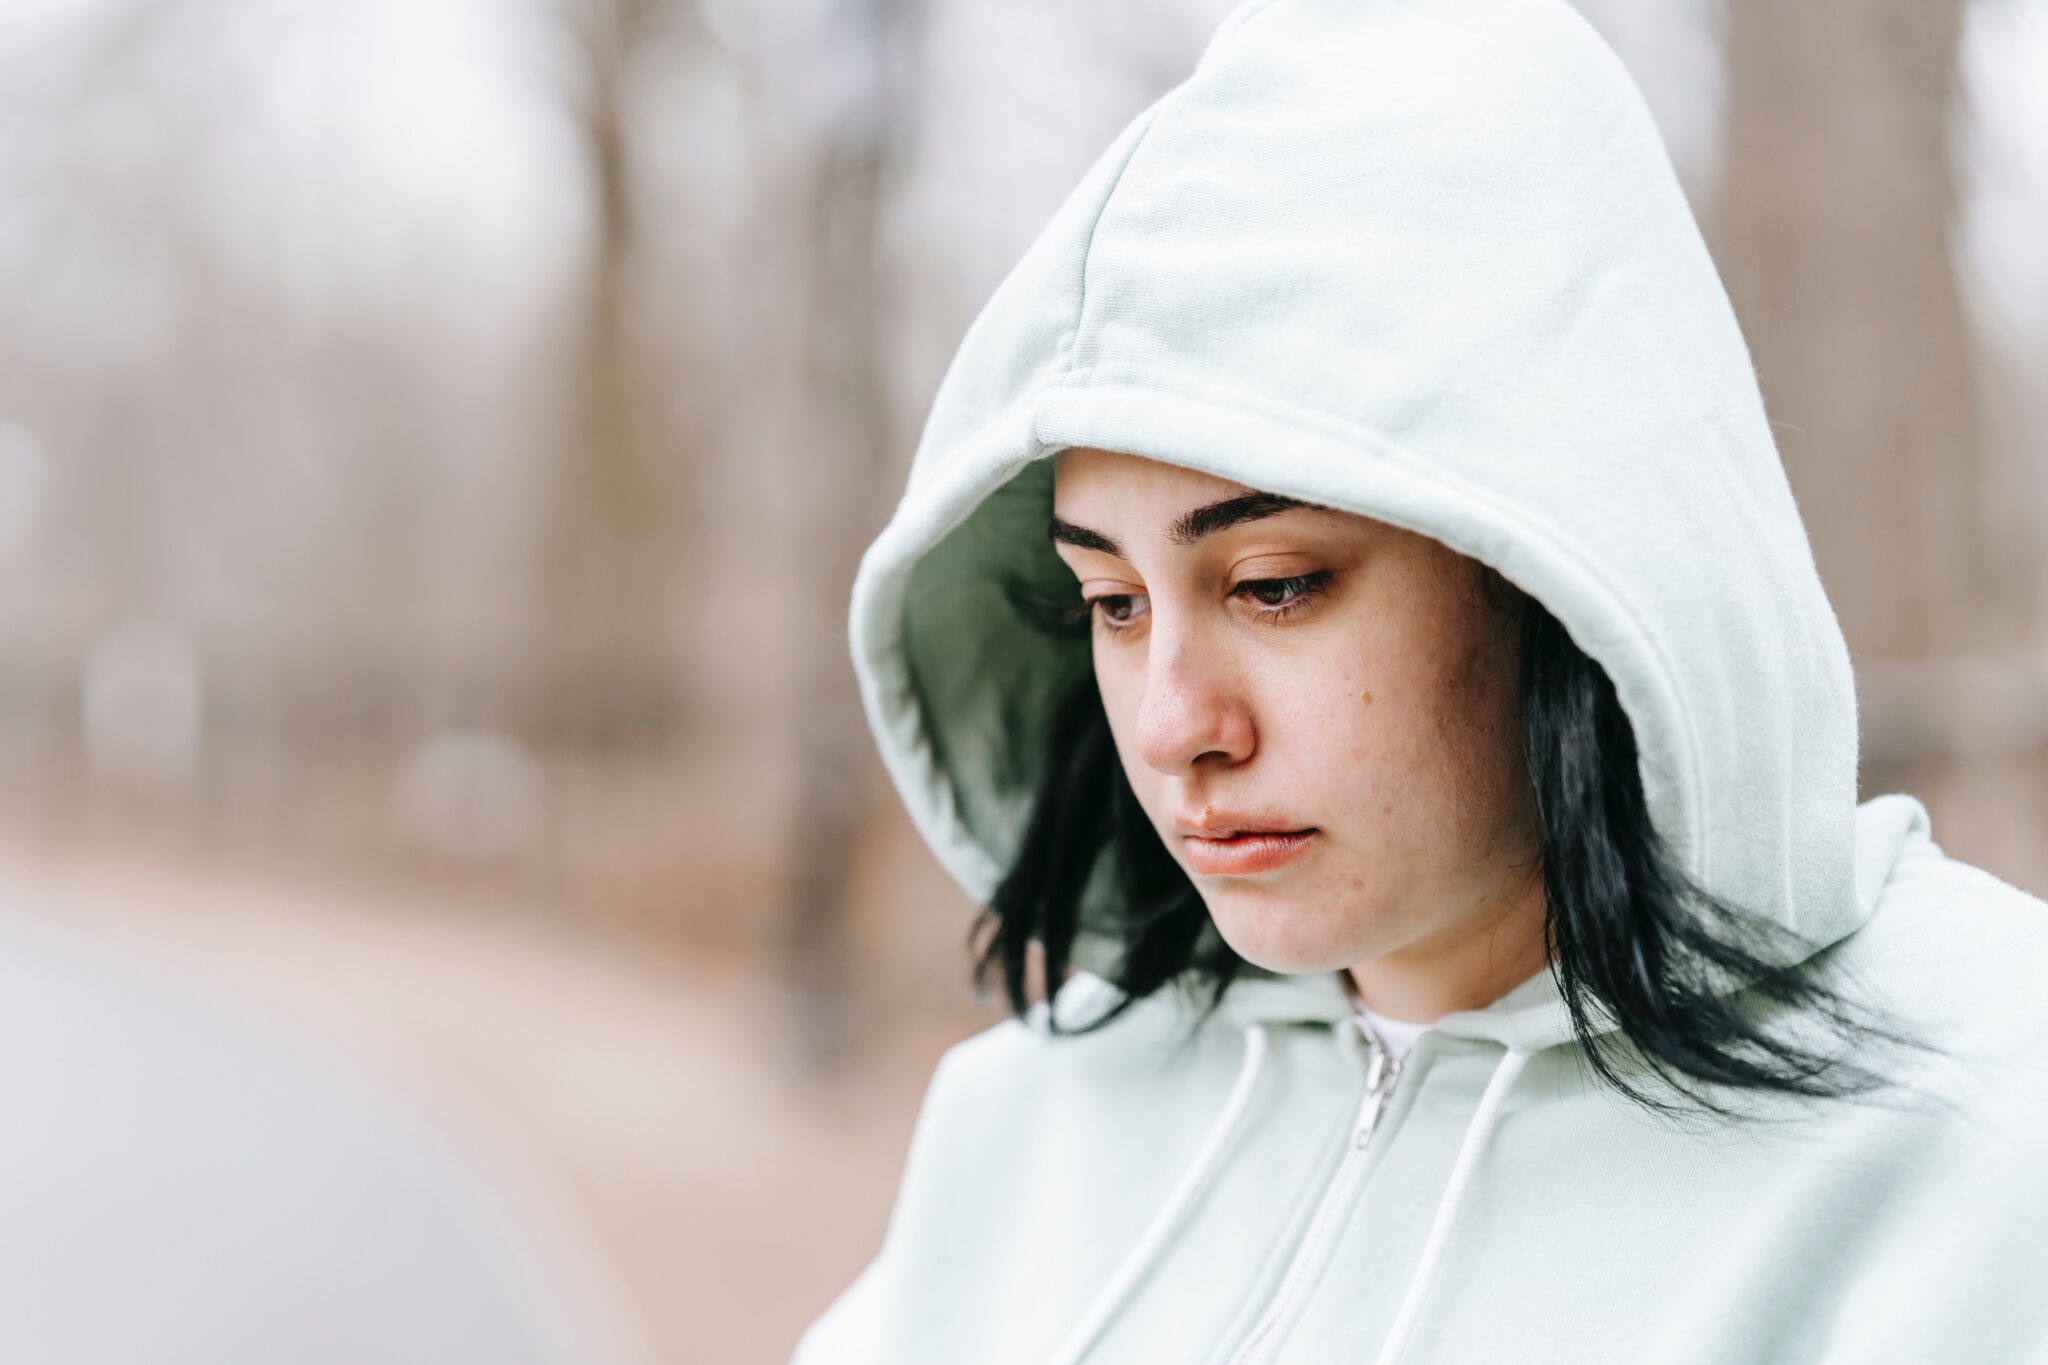 Vrouw met hoodie kijkt verdrietig omlaag, ze weet niet wat de oorzaken van haar onzekerheid zijn